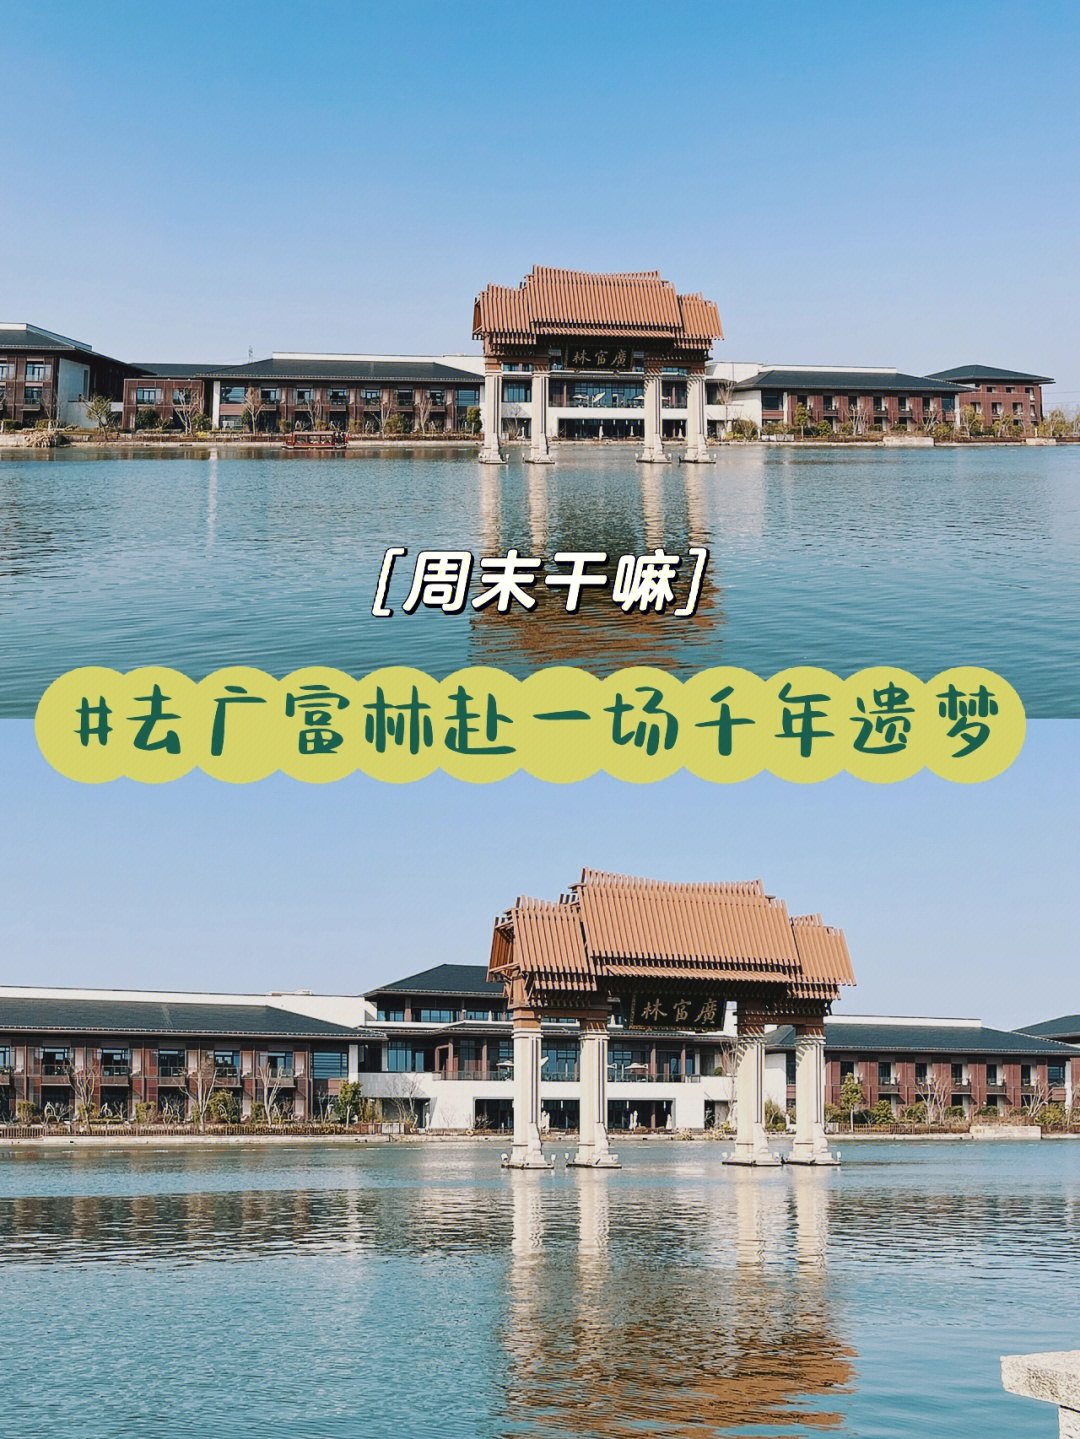 去松江广富林文化遗址公园,探寻一场千年遗梦99时间:9:00